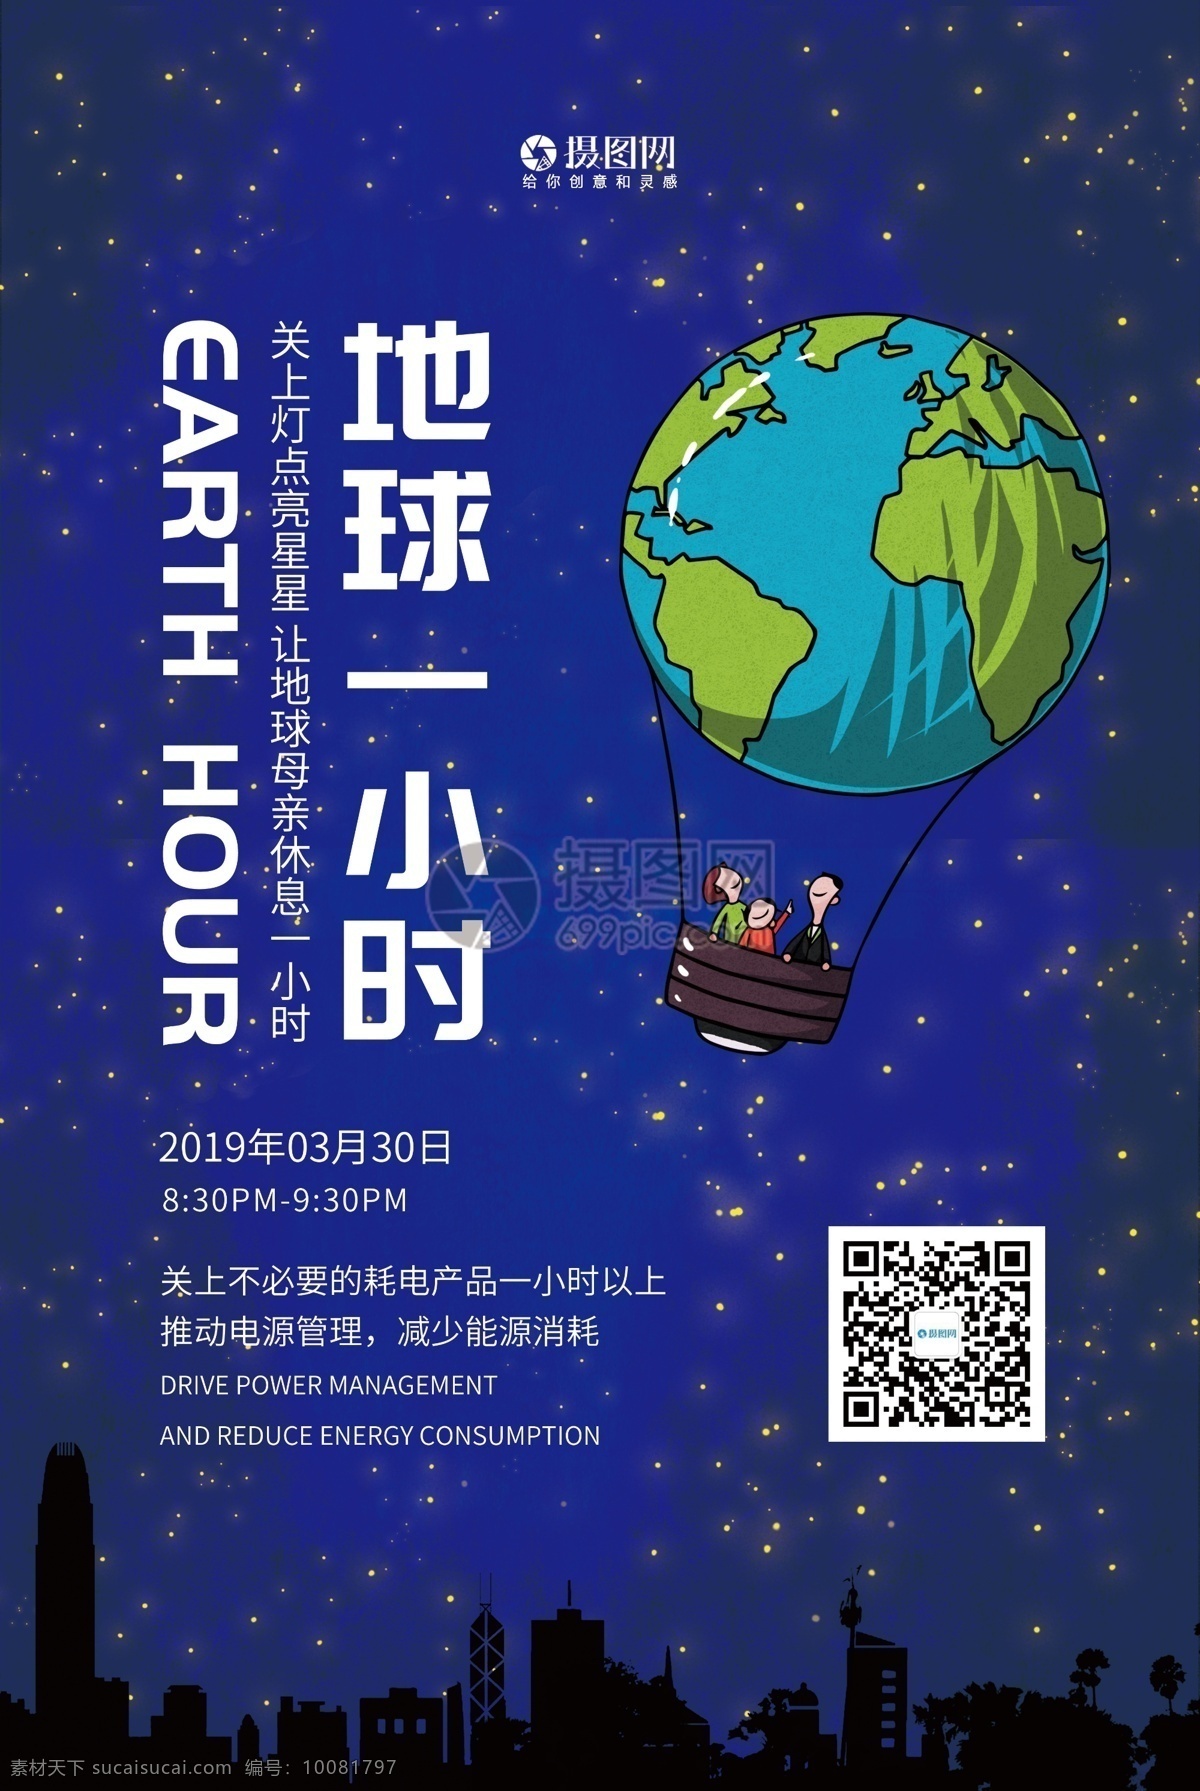 插 画风 地球 小时 公益 宣传海报 插画风 地球一小时 宣传 海报 环保 低碳 熄灯一小时 地球1小时 蓝色